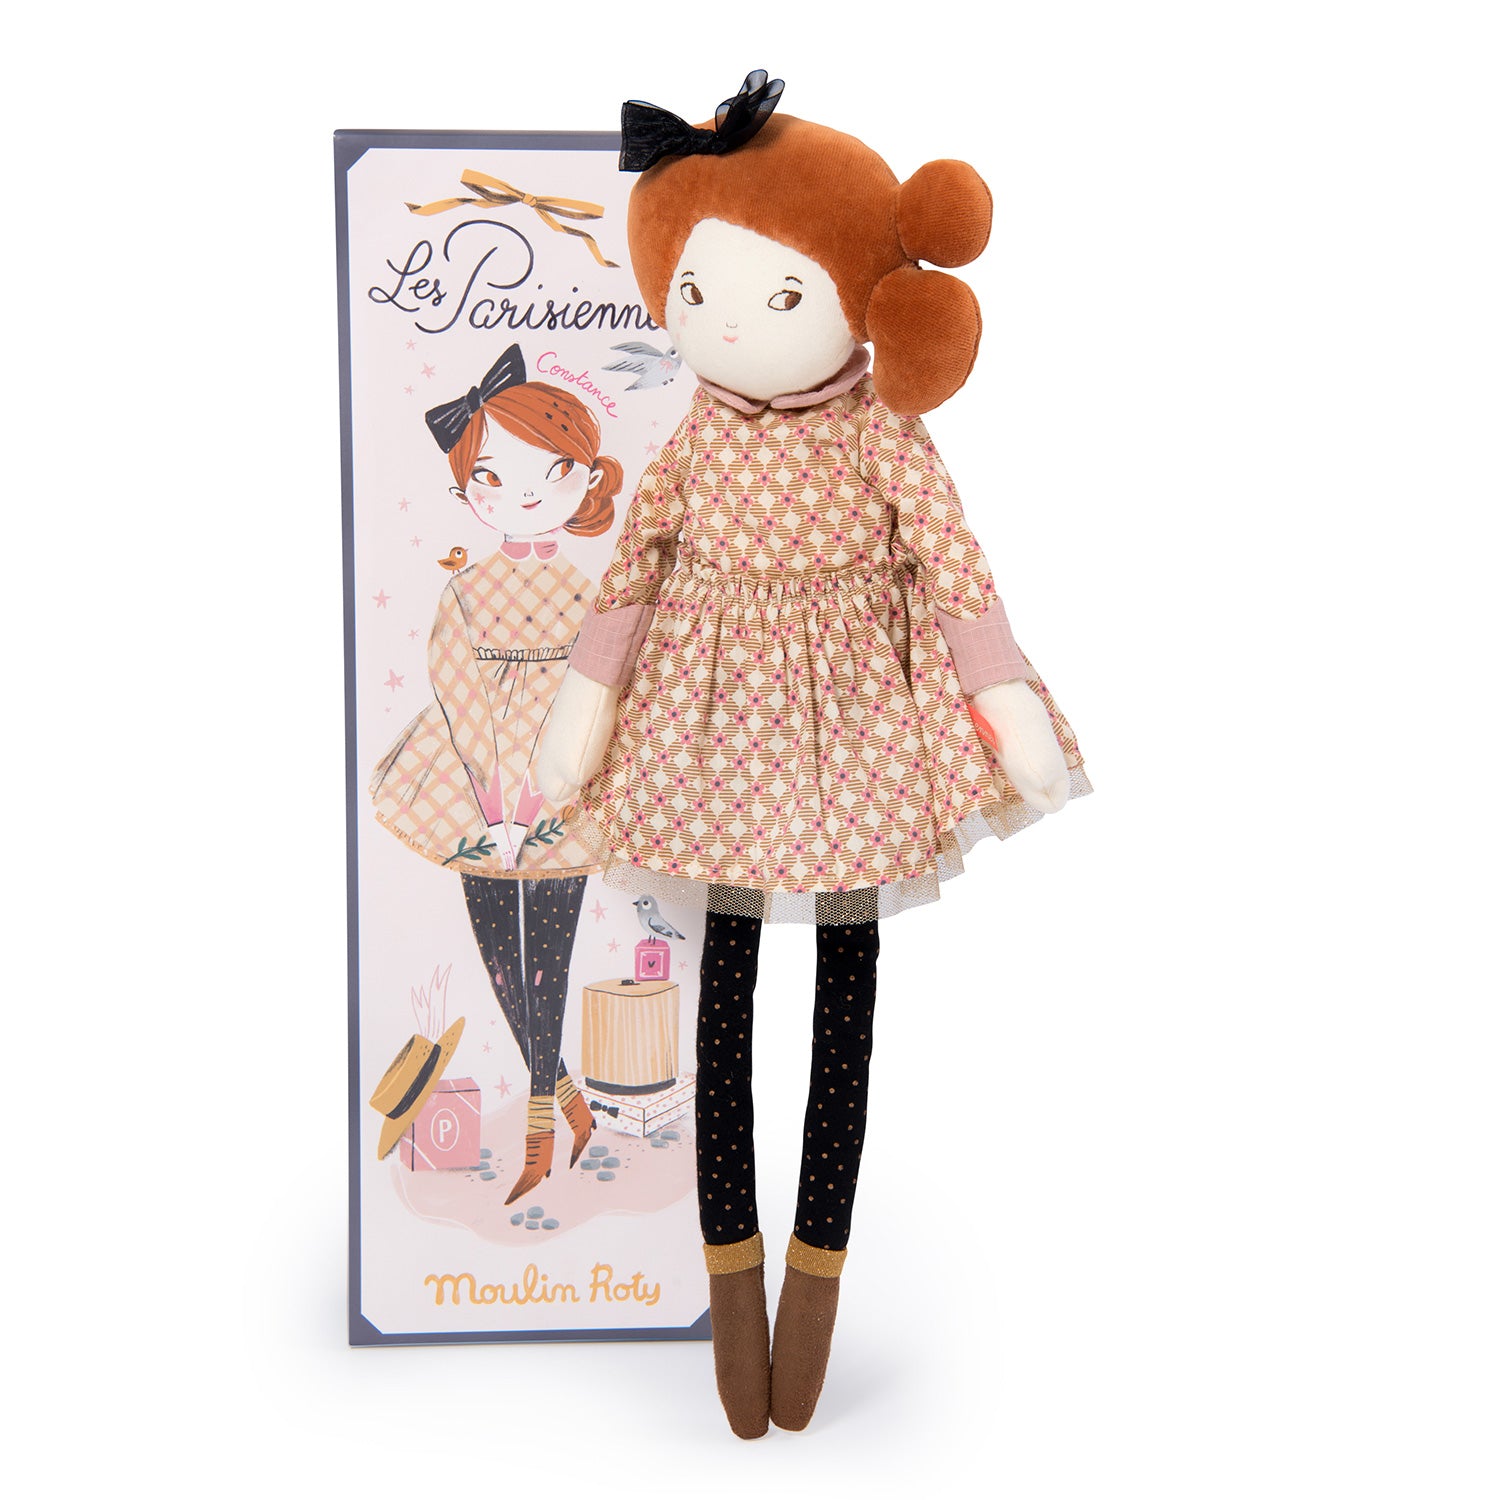 Les Parisiennes soft dolls - Madame Constance